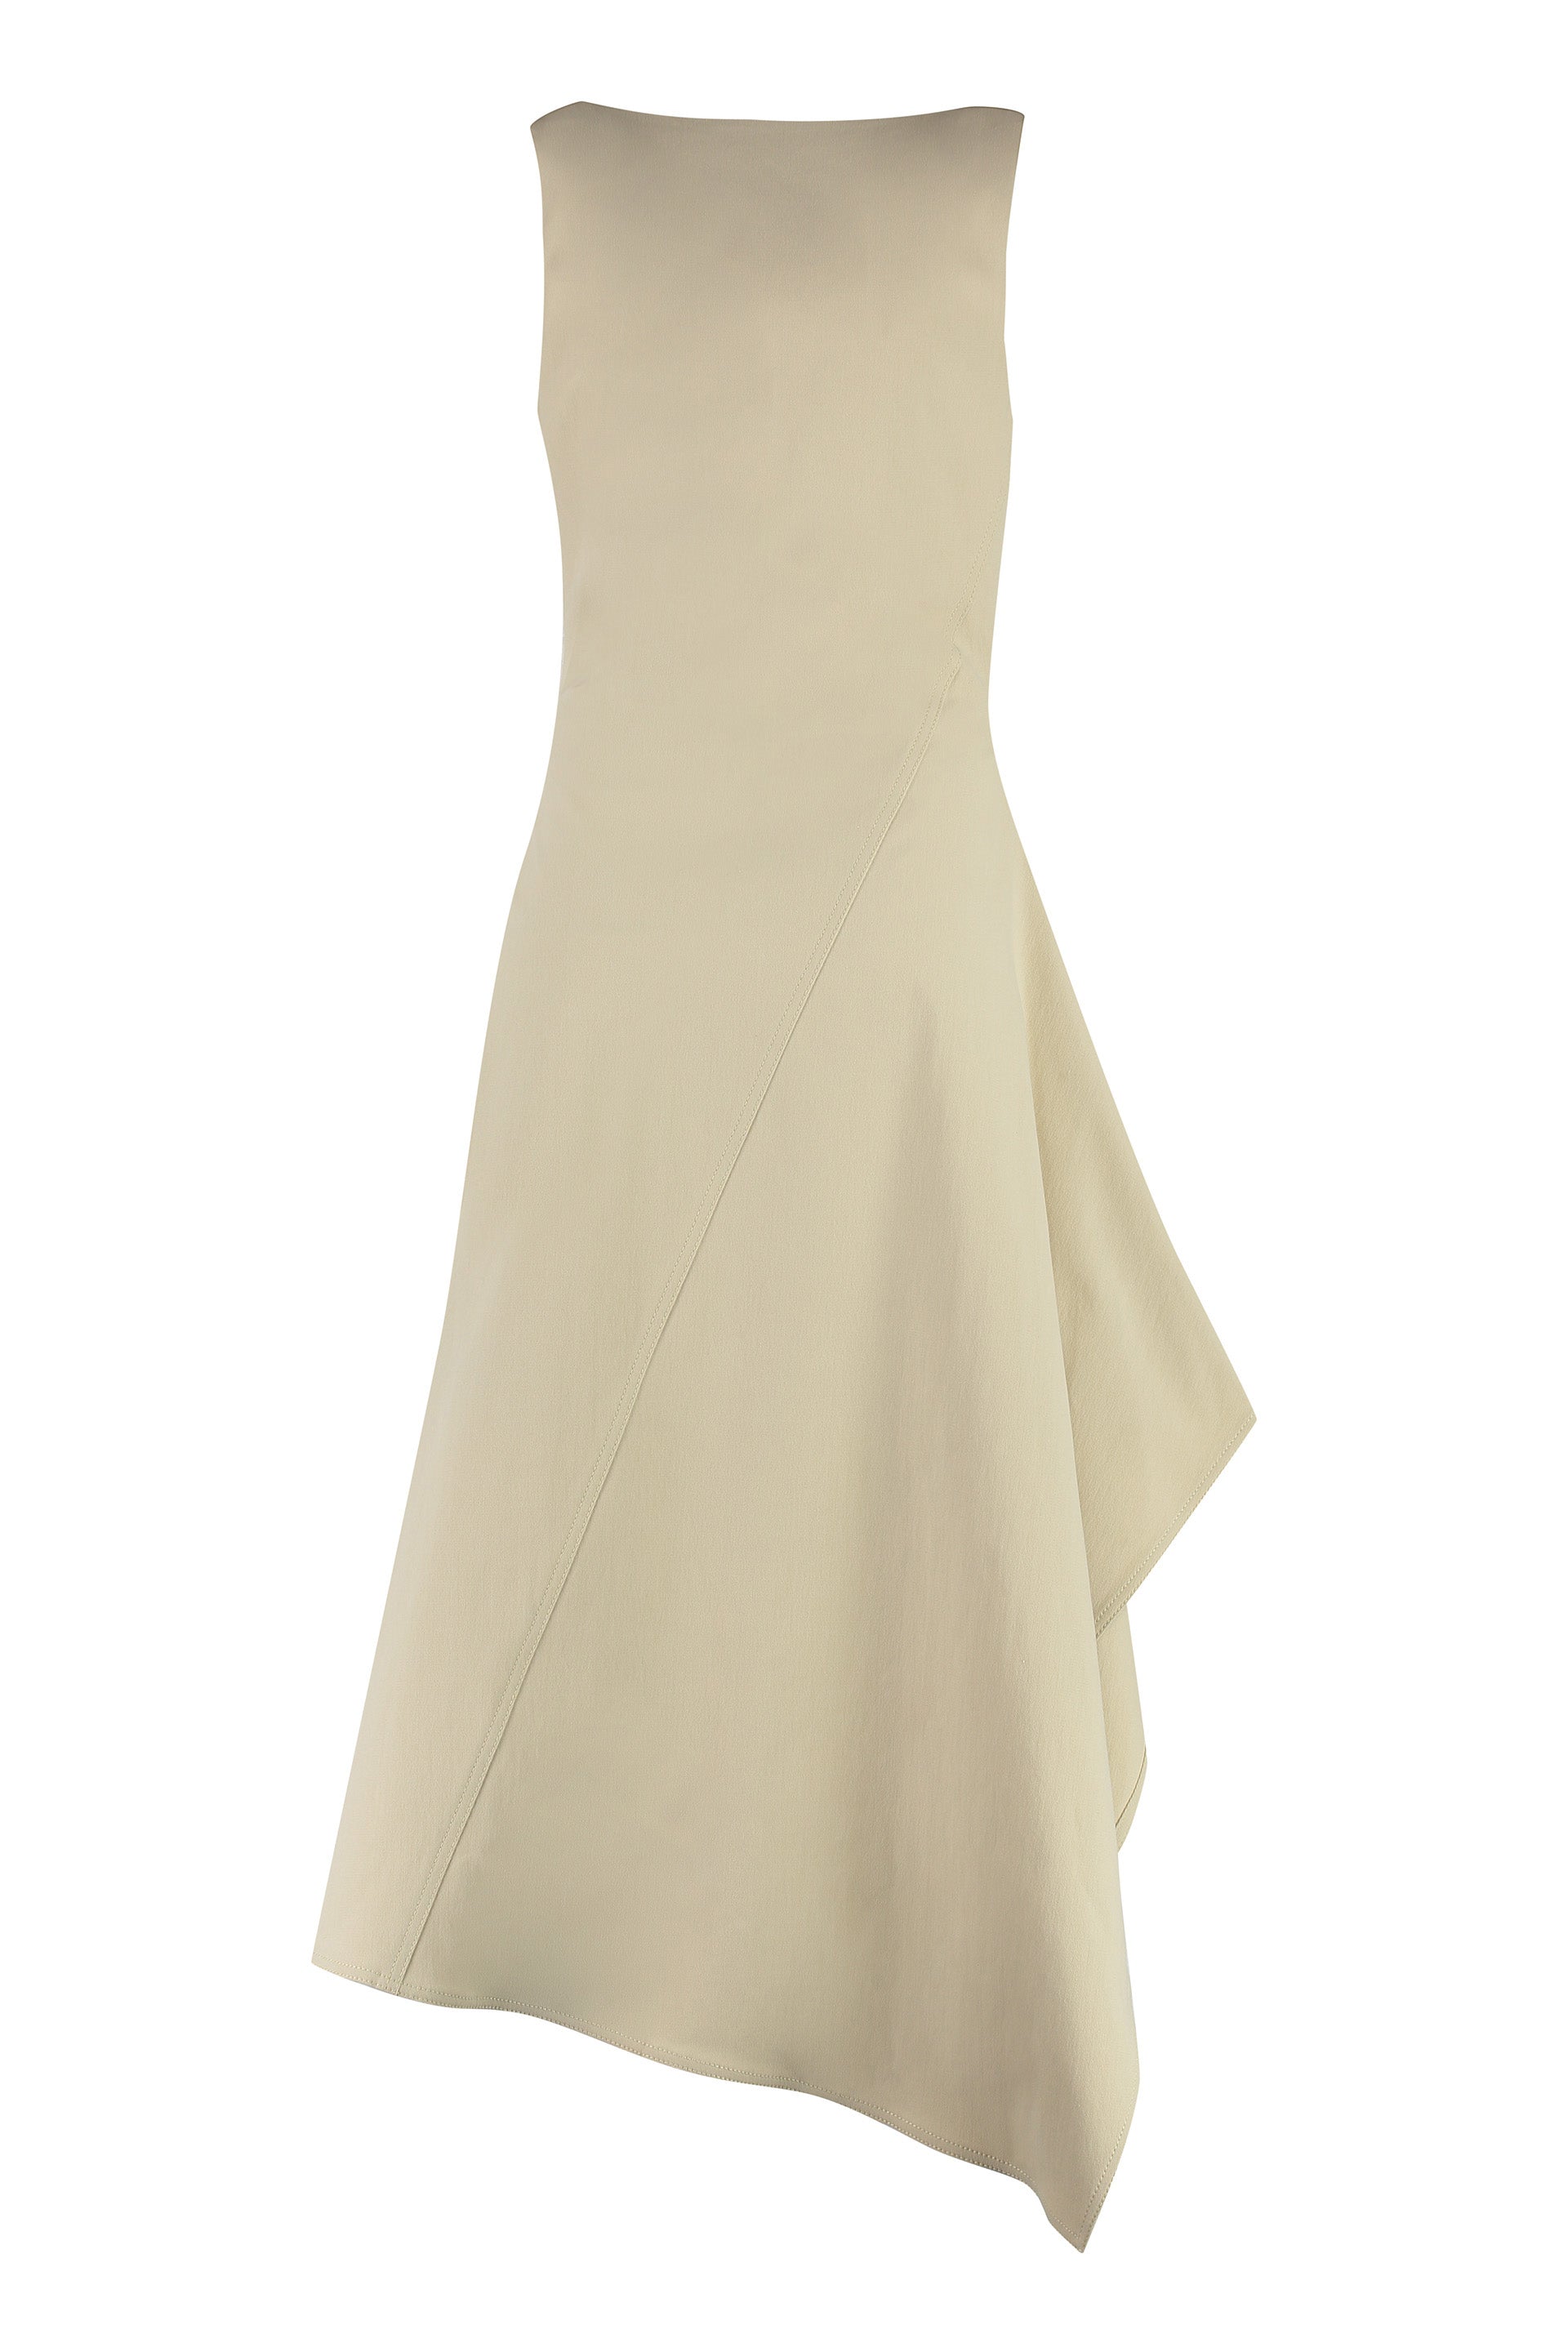 Shop Bottega Veneta Beige Asymmetrical Cotton Dress For Women